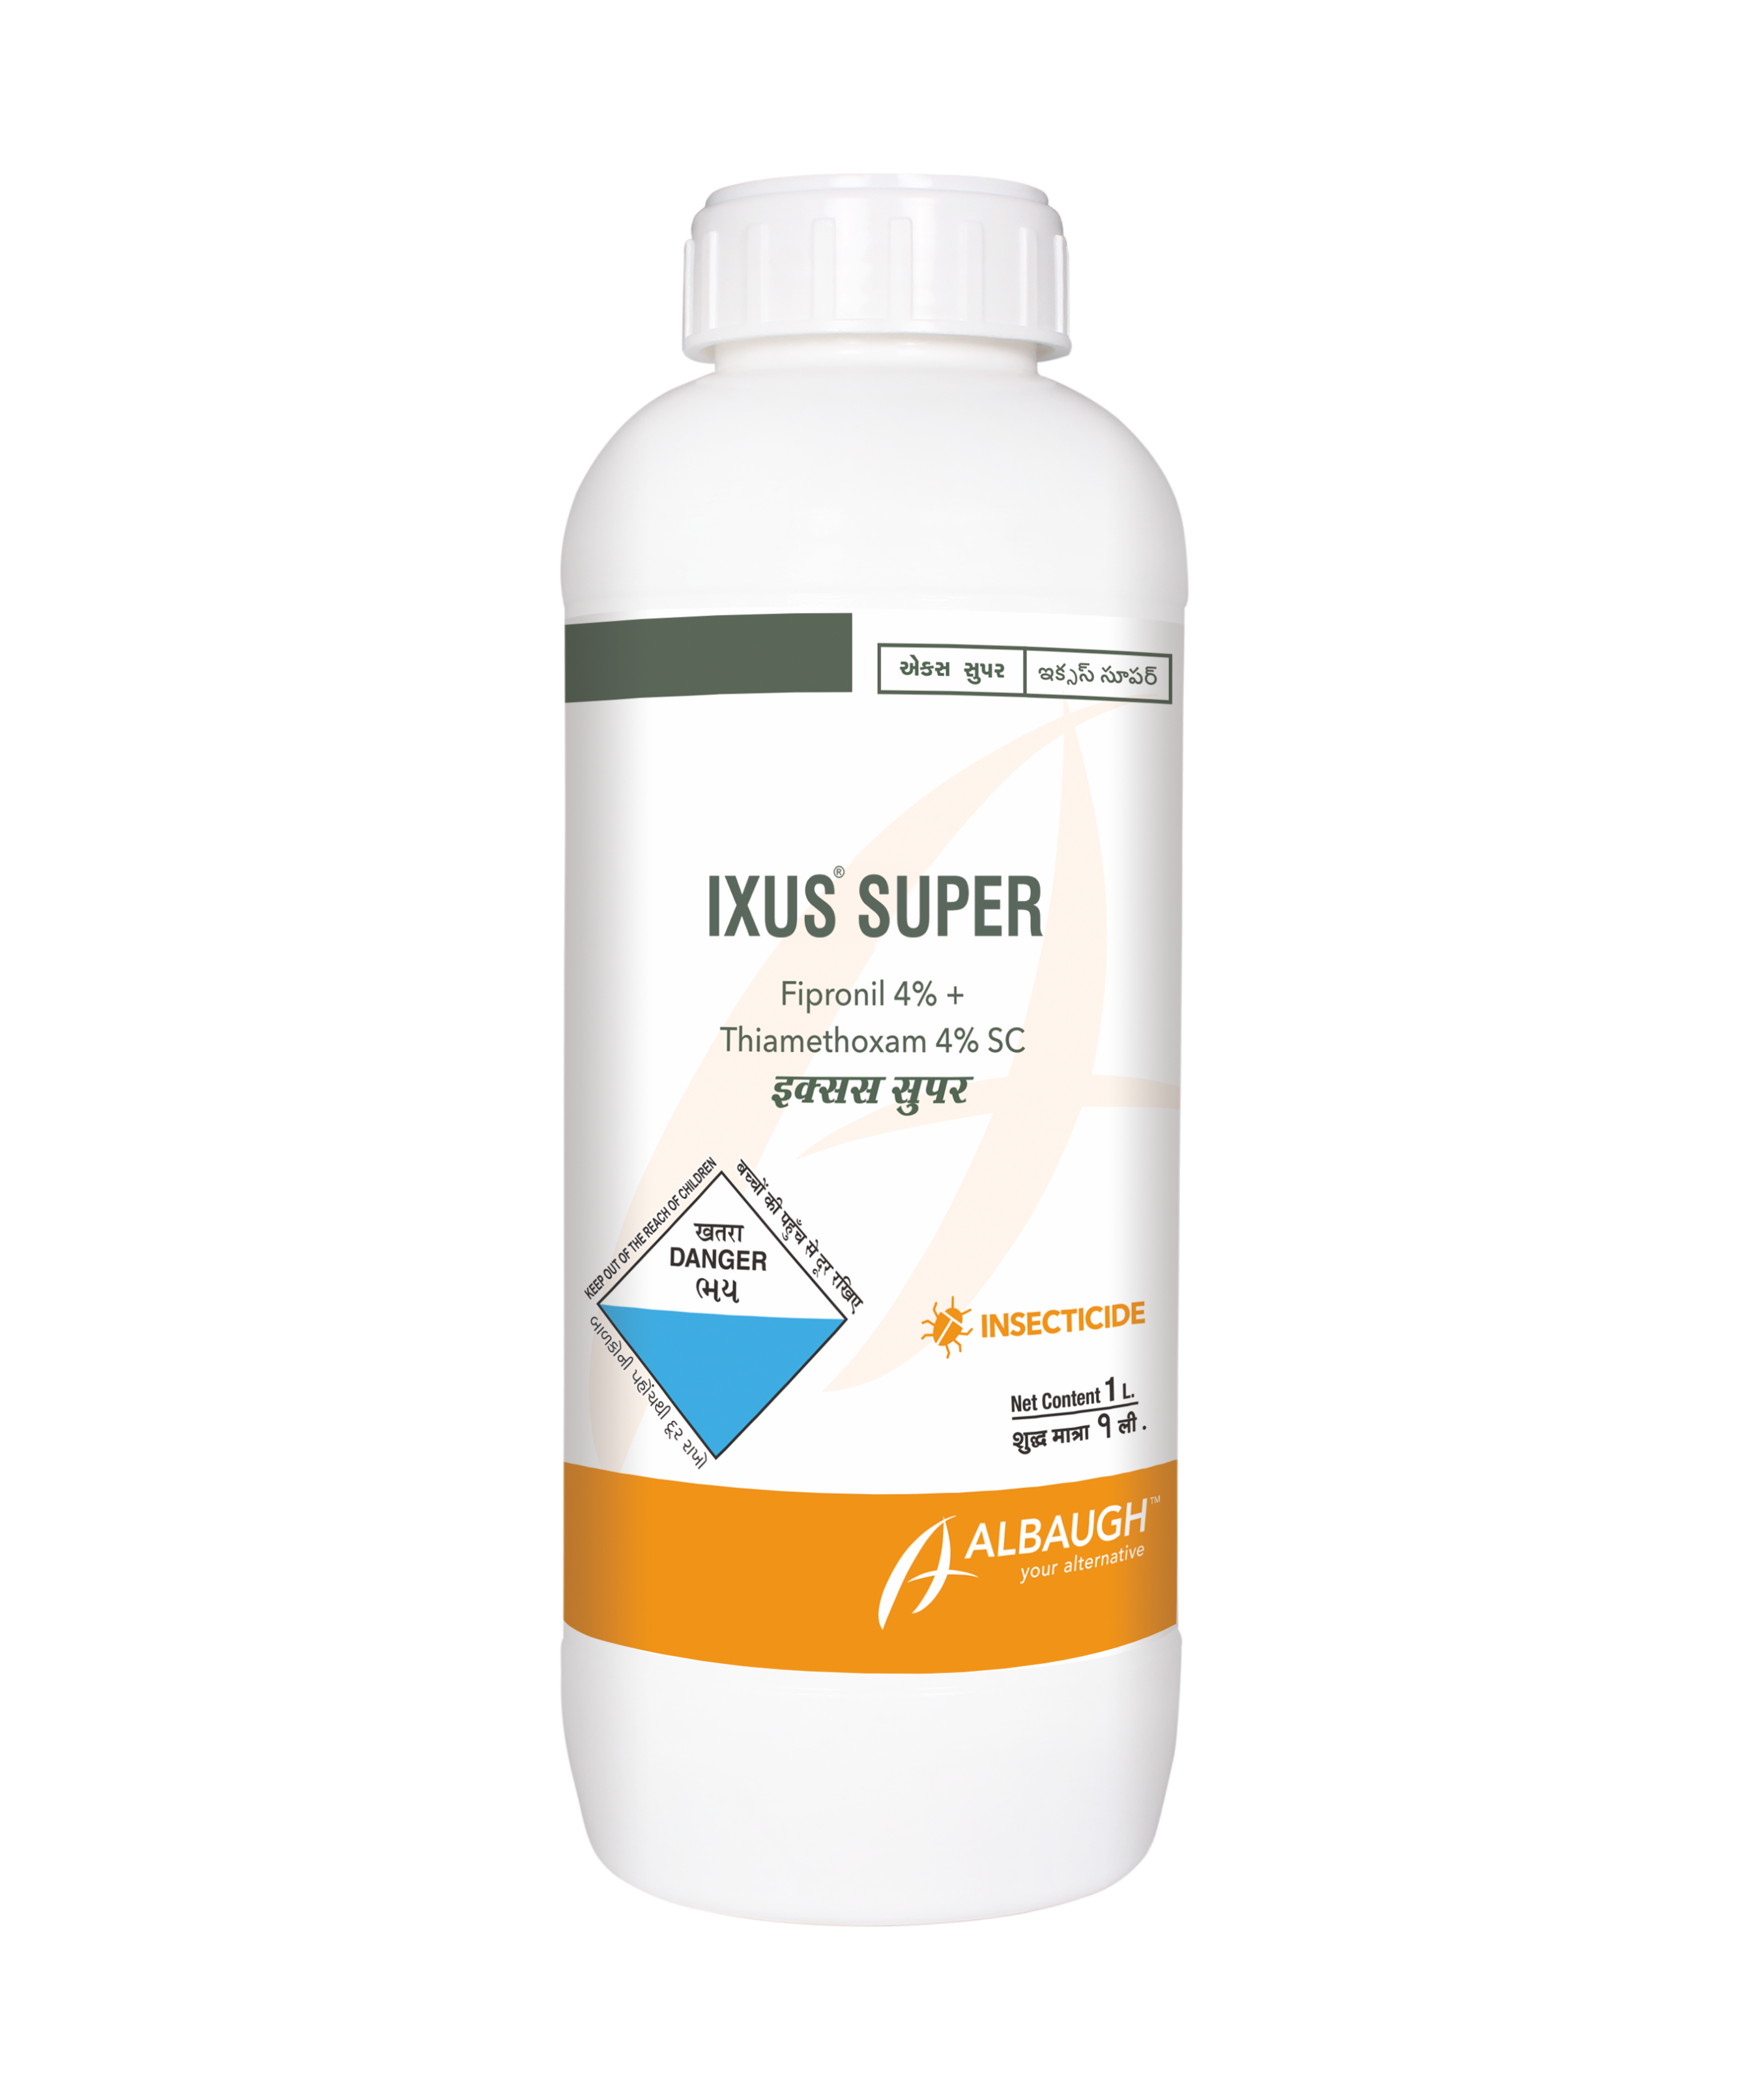 Ixus Super: Fipronil 4% + Thiamethoxam 4% SC